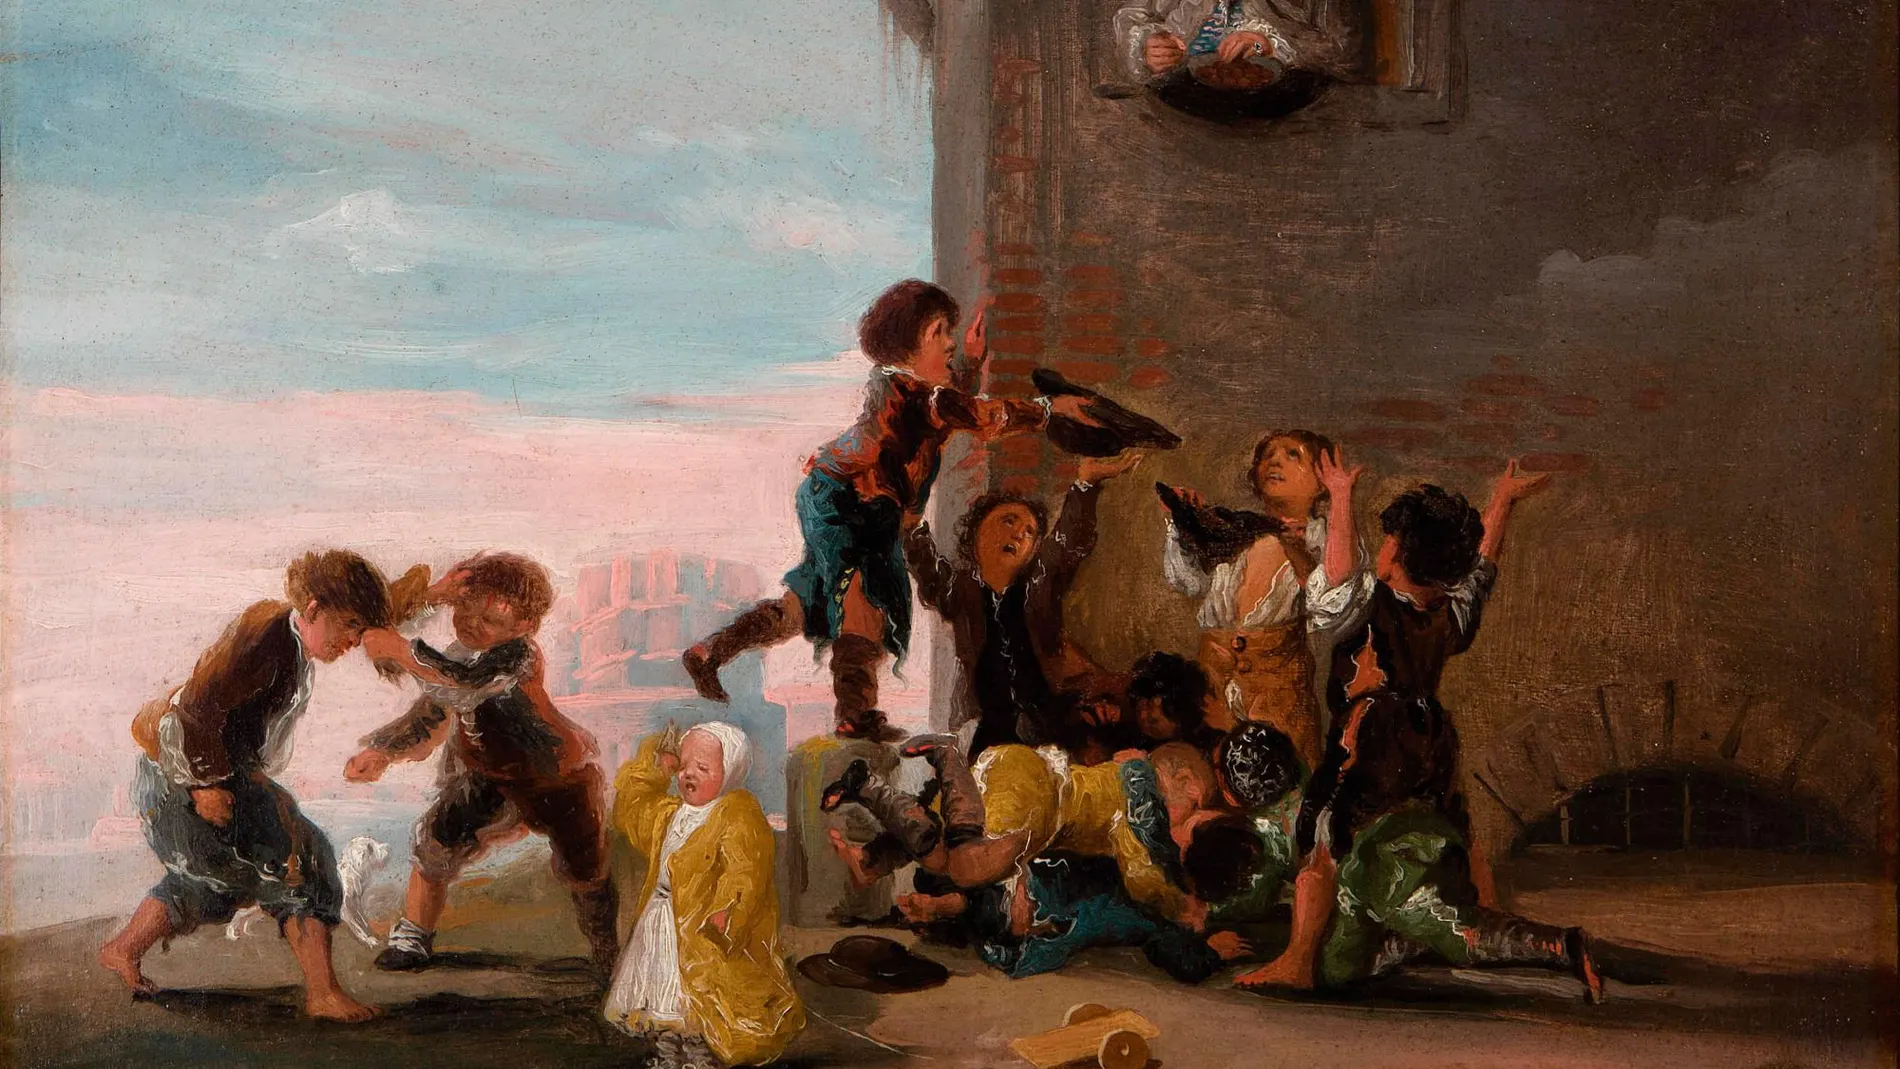 La exposición recoge hasta siete obras costumbristas de Francisco de Goya y de otros autores, como la pieza de Antonio Carnicero, procedente del Museo de Bellas Artes de Bilbao. LA RAZÓN